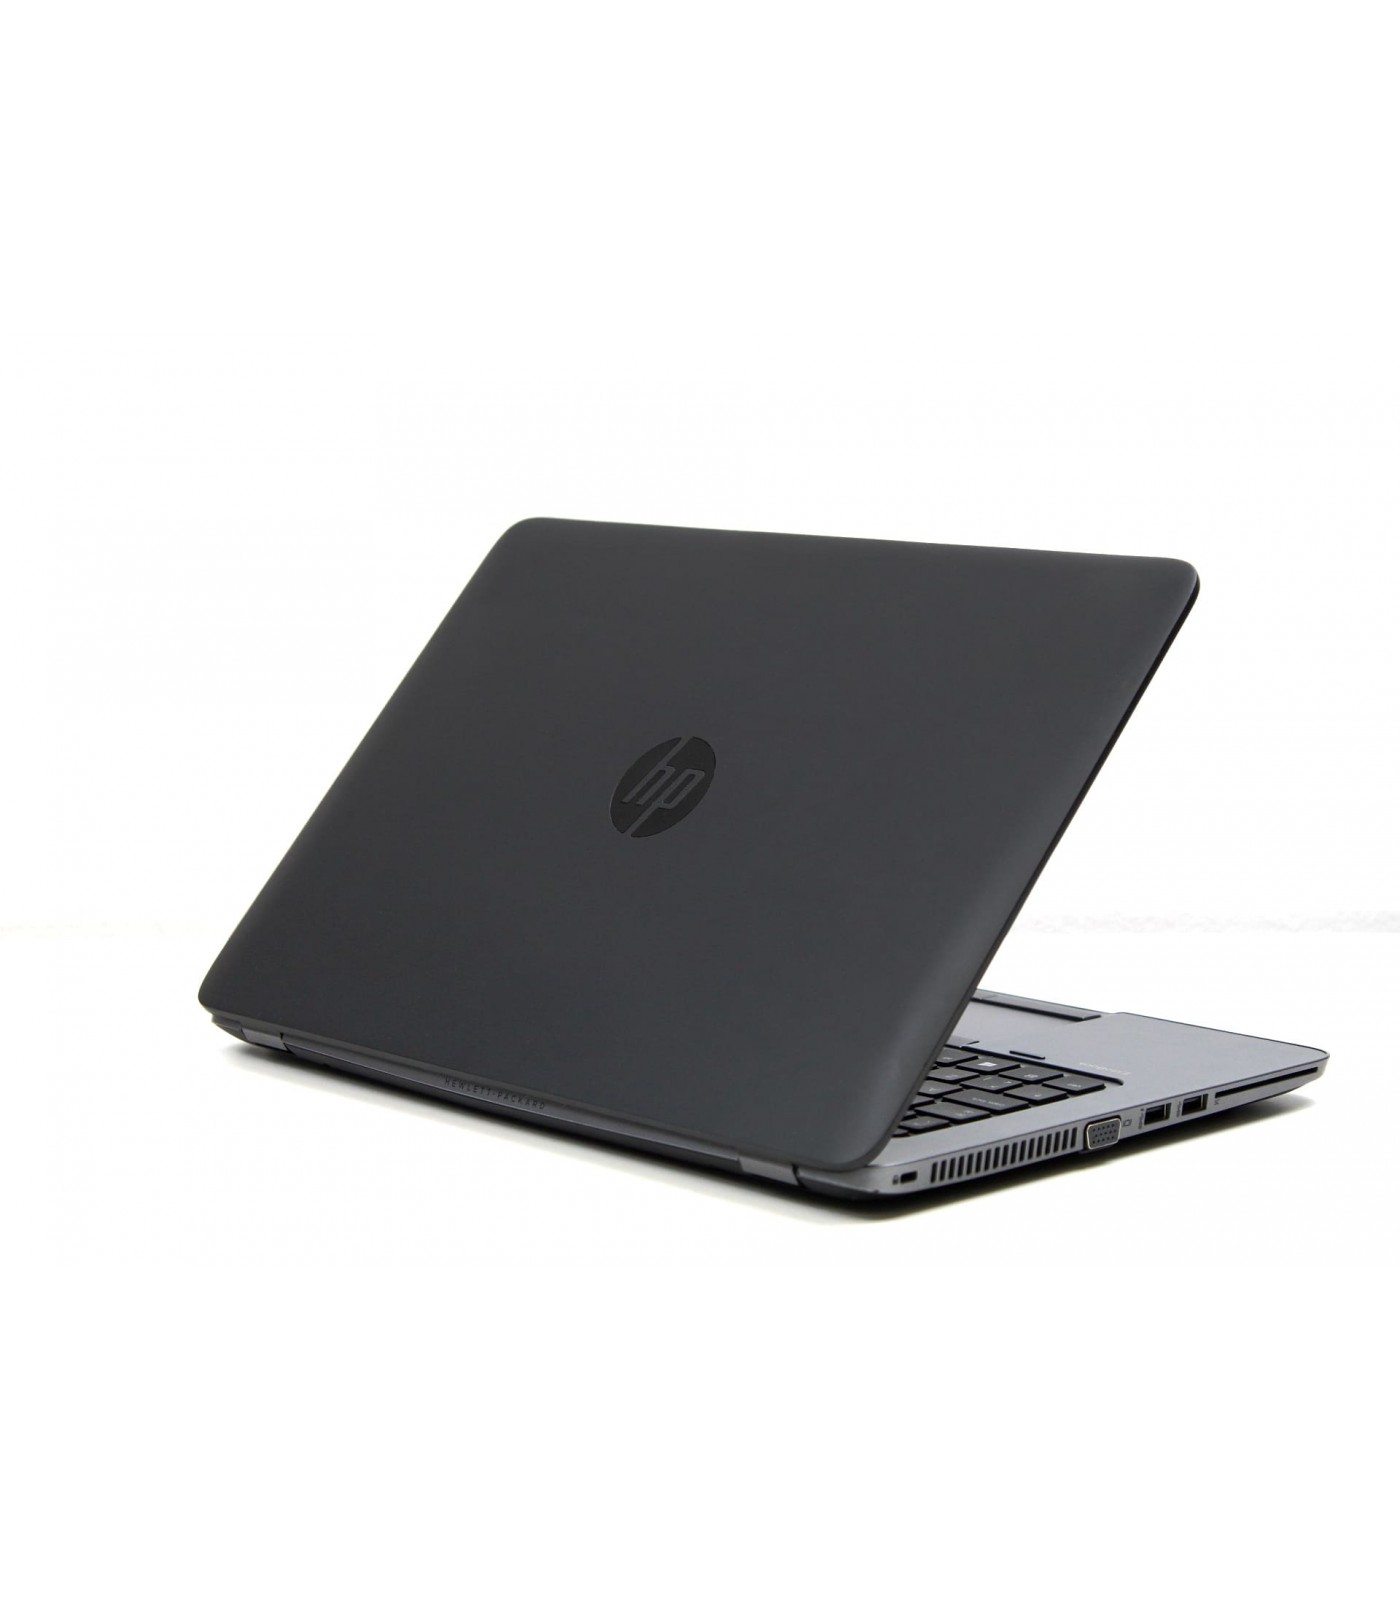 Poleasingowy laptop HP EliteBook 840 G2 z Intel Core i5-5300u w klasie A.